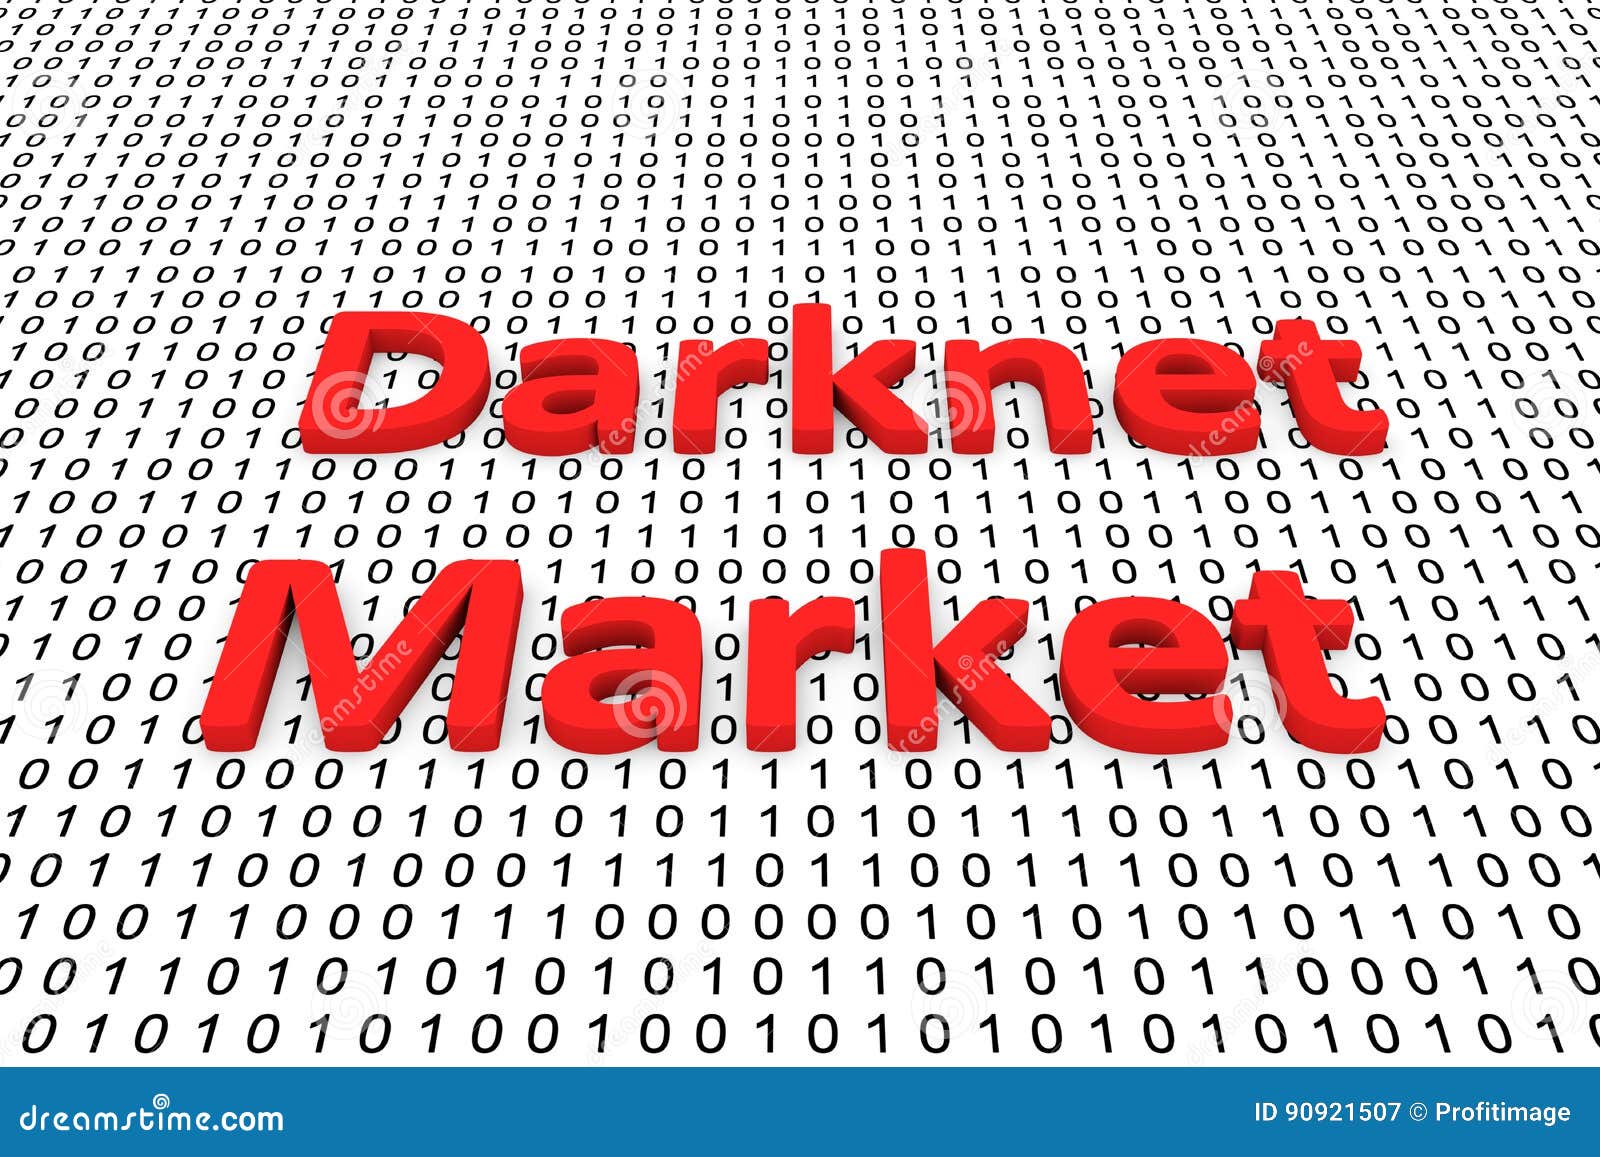 Best Dark Web Markets 2023